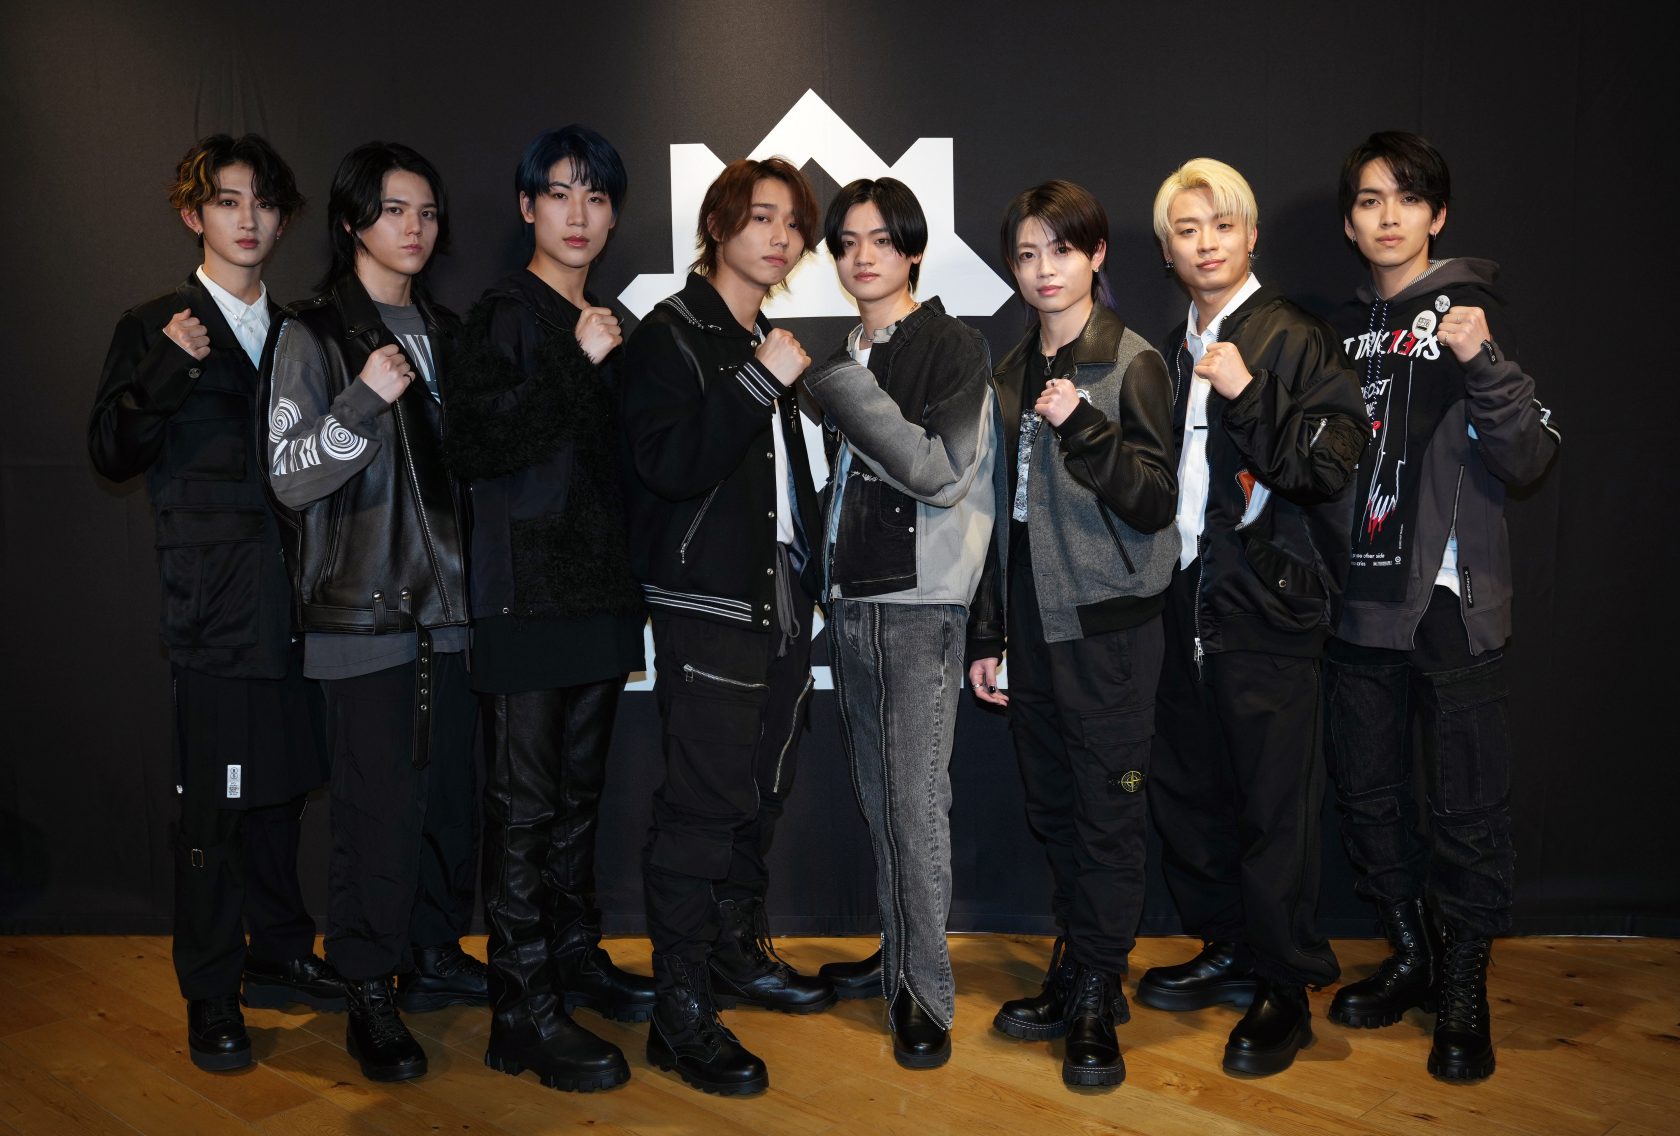 ガッツポーズする(左から)NAOYA、RAN、HAYATO、SEITO、KAIRYU、RYUKI、TAKUTO、EIKI